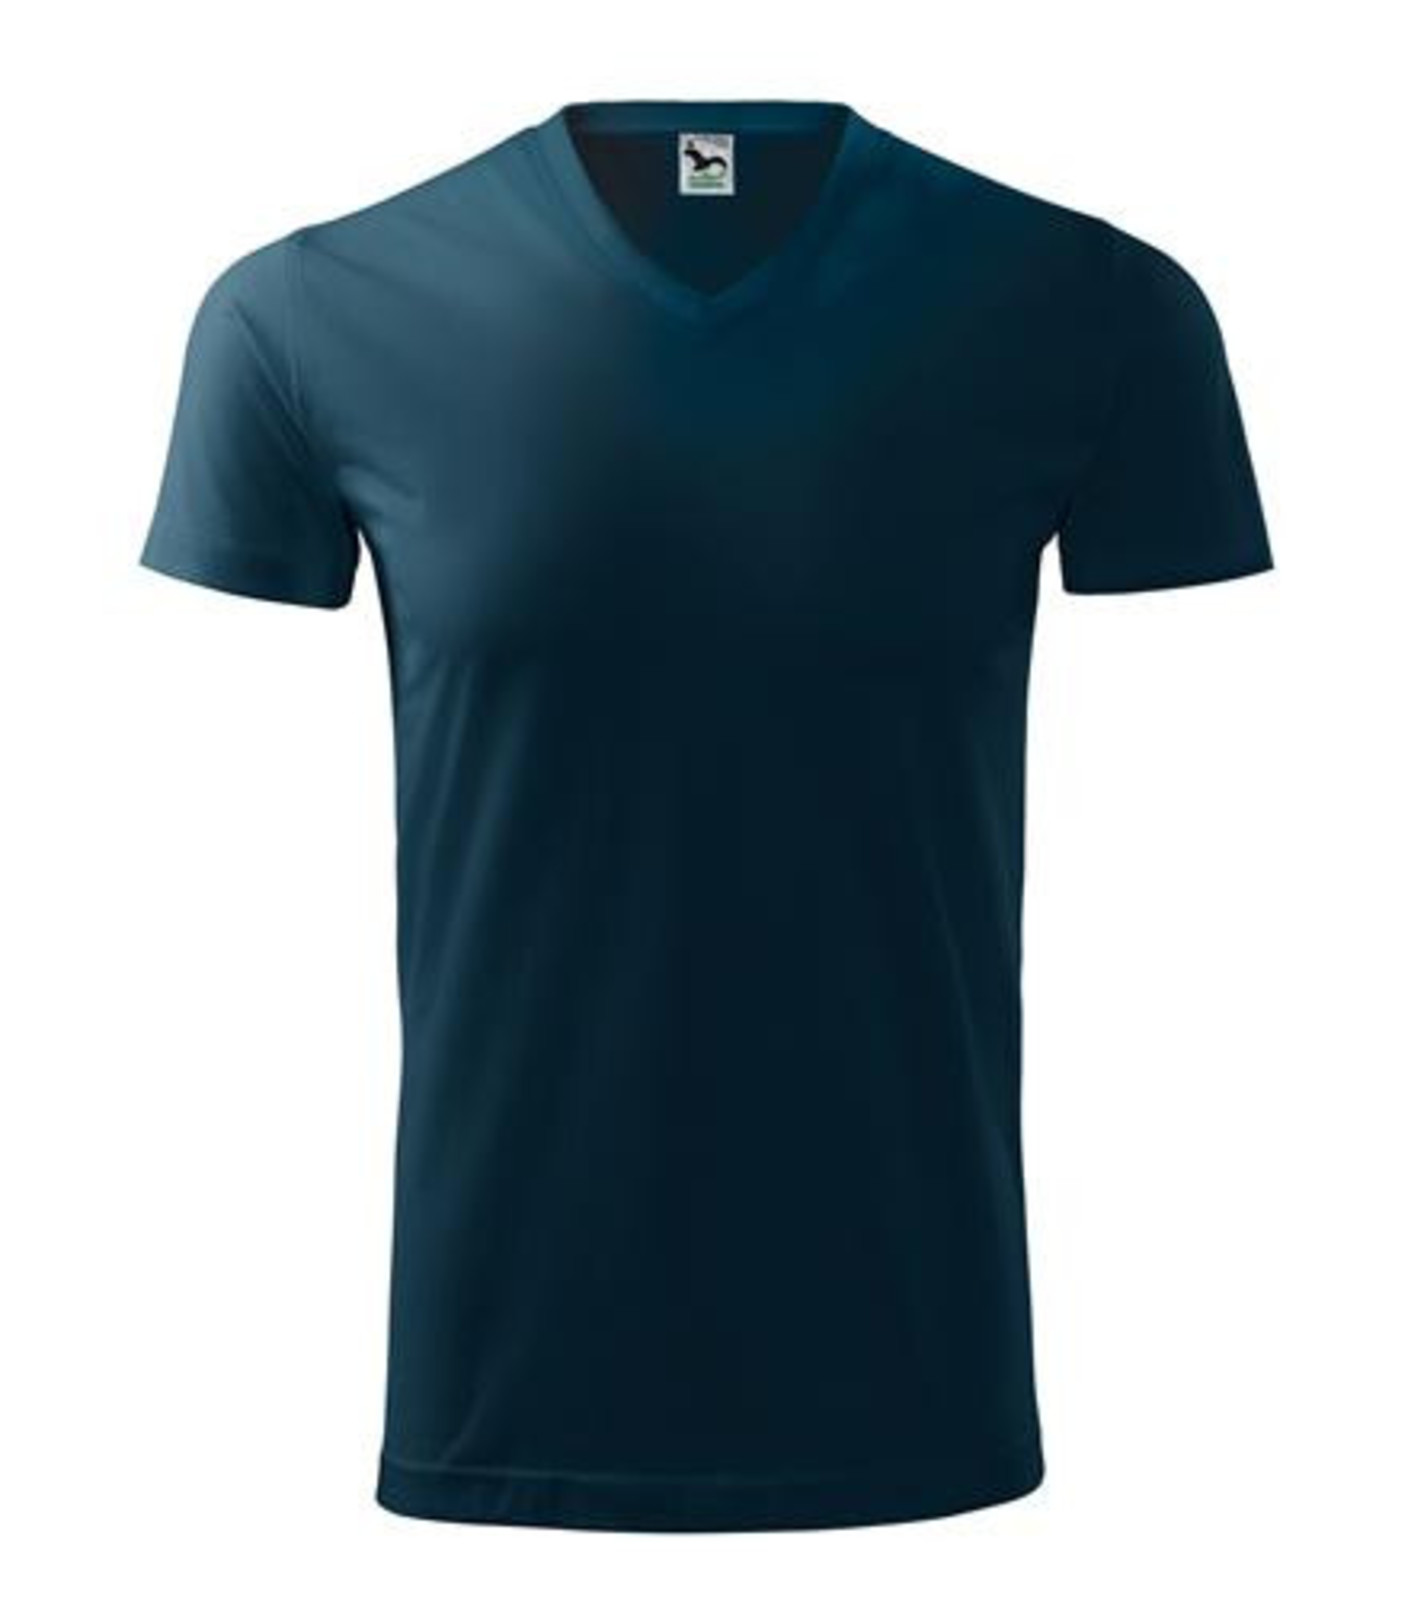 Unisex tričko s V výstrihom Adler Heavy V-Neck 111 - veľkosť: L, farba: tmavo modrá